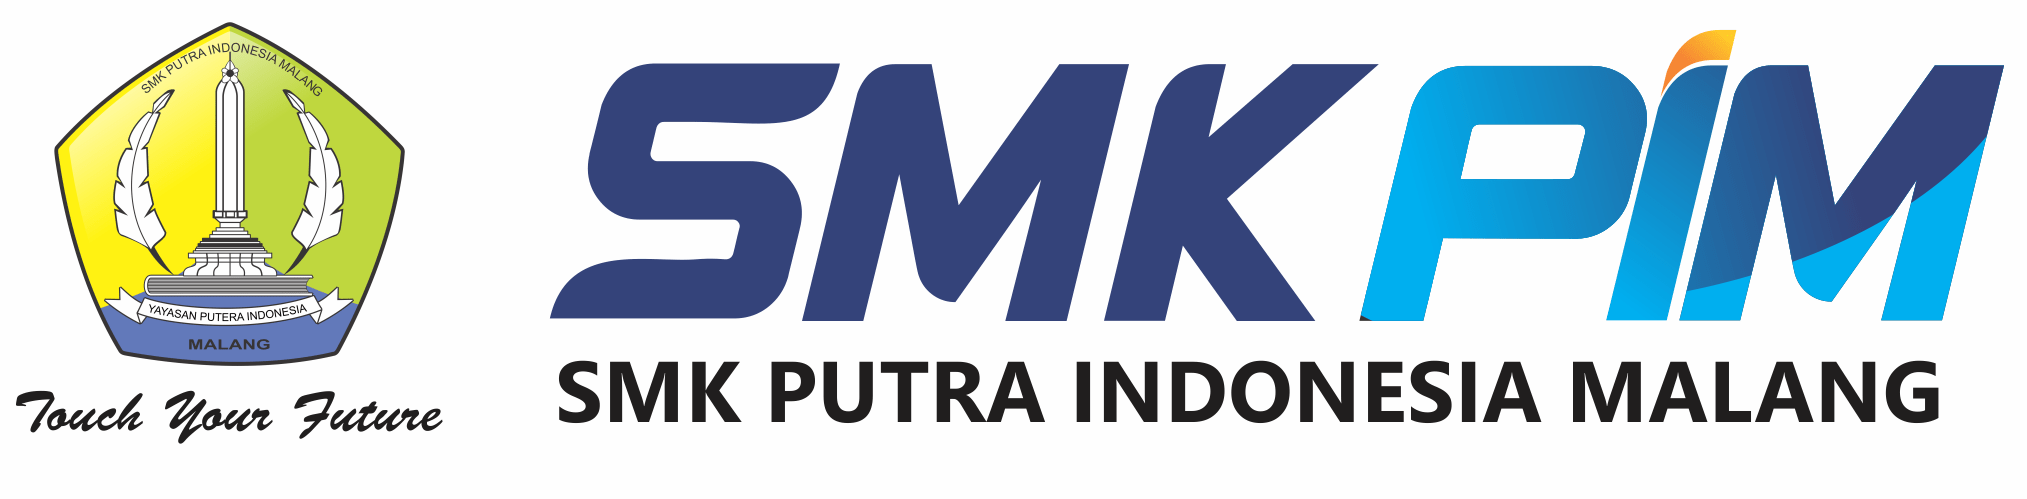 SMK Putra Indonesia Malang – Sekolah Kimia Industri & Farmasi Industri Terbaik Kota Malang